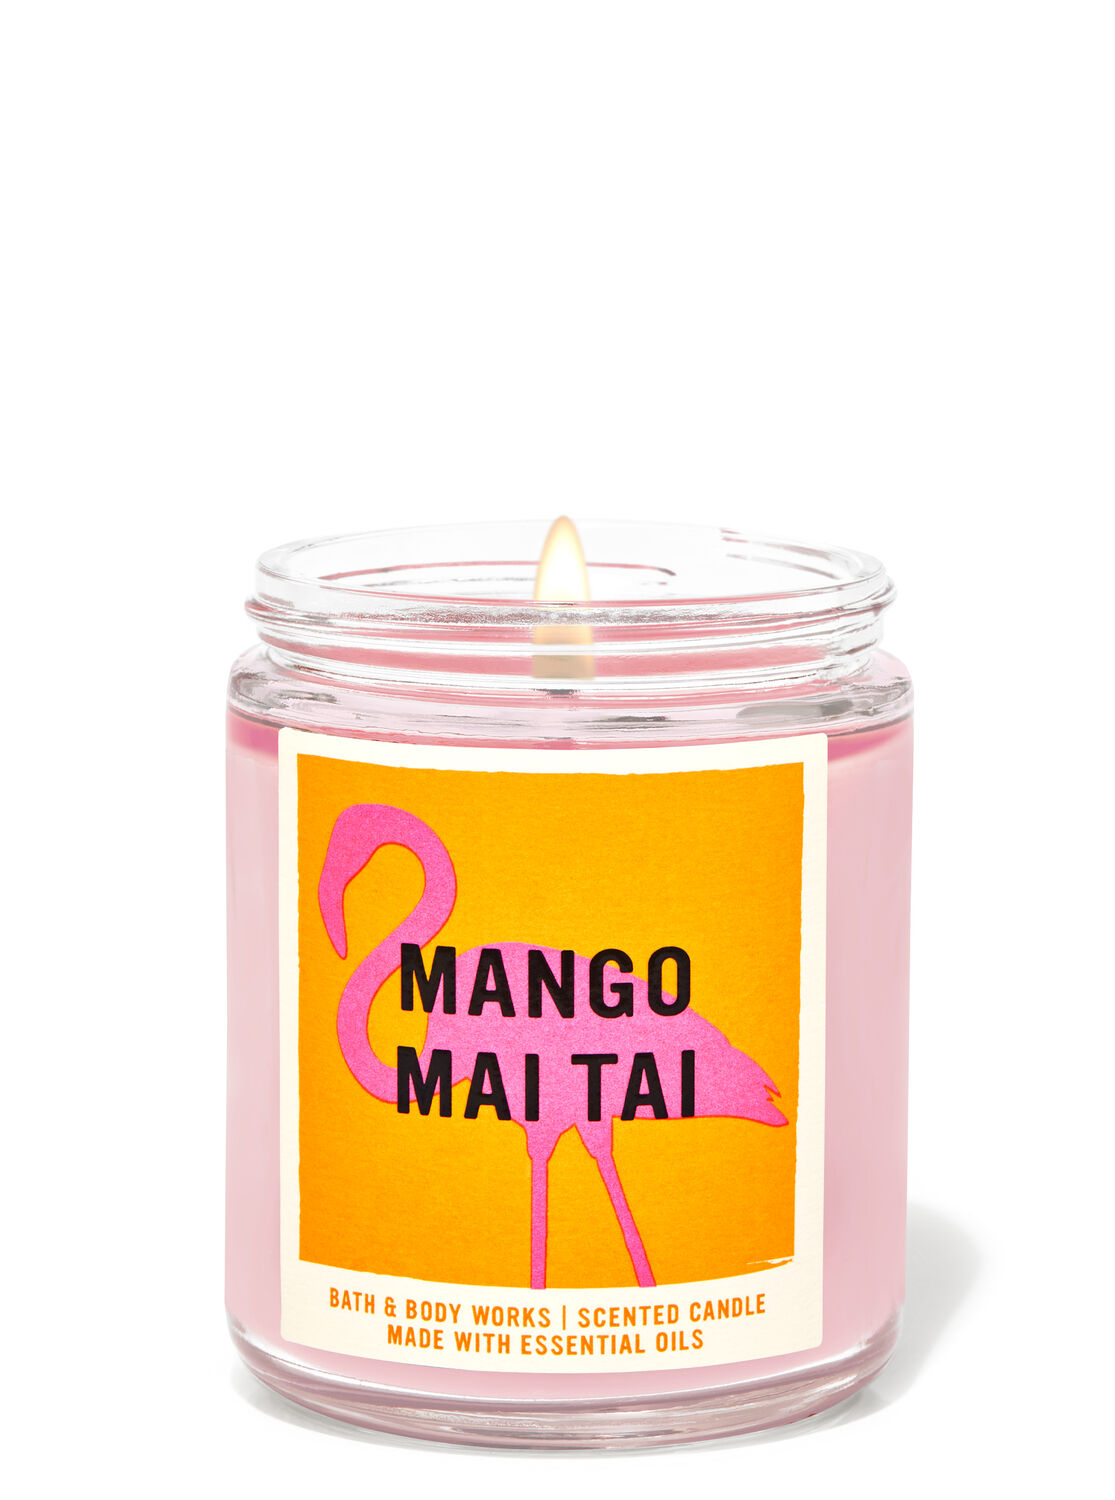 Mango Mai Tai Single Wick Candle